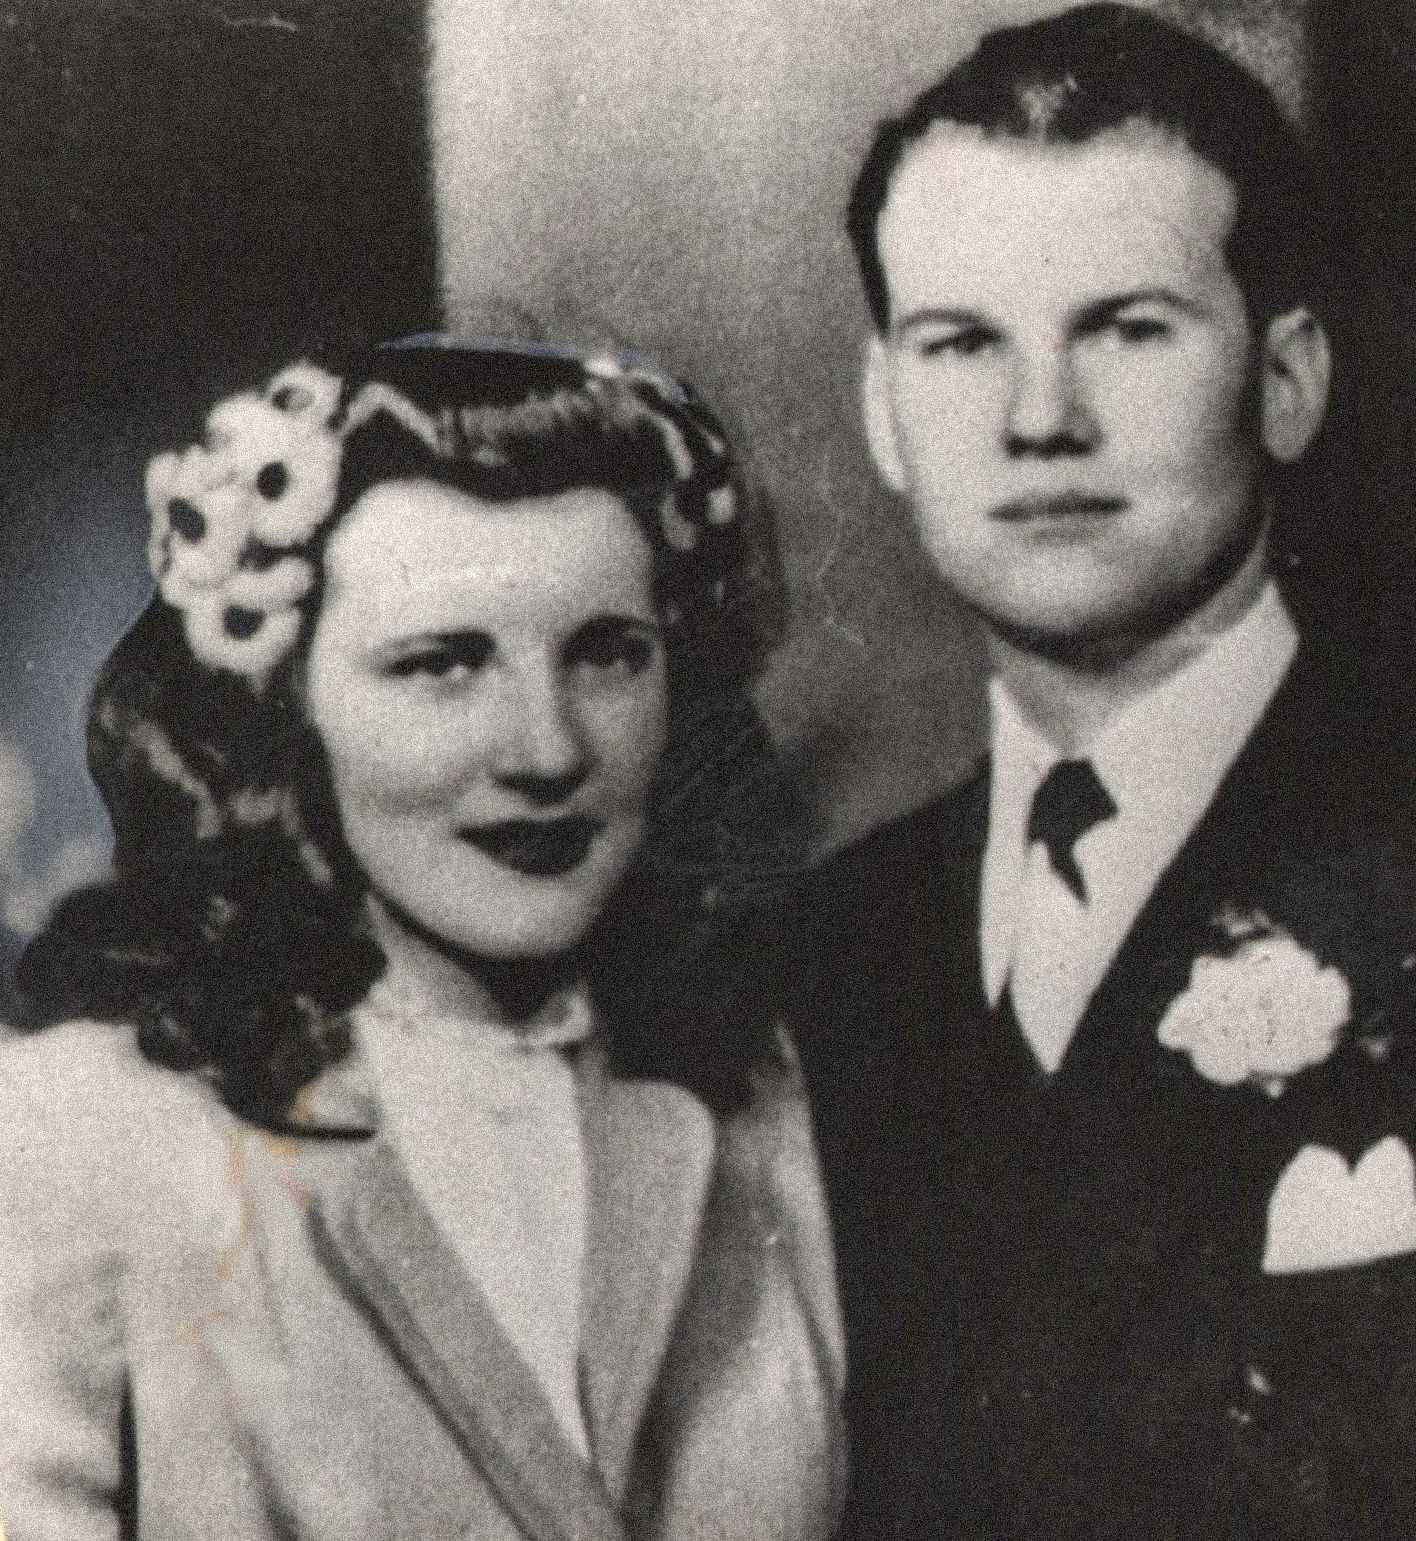 Siin on pildil Sam ja Marilyn Sheppard, noor ja pealtnäha õnnelik paar. Nad abiellusid 21. veebruaril 1945 ja neil oli üks ühine laps, Sam Reese Sheppard. Marilyn oli mõrva ajal oma teise lapsega rase.